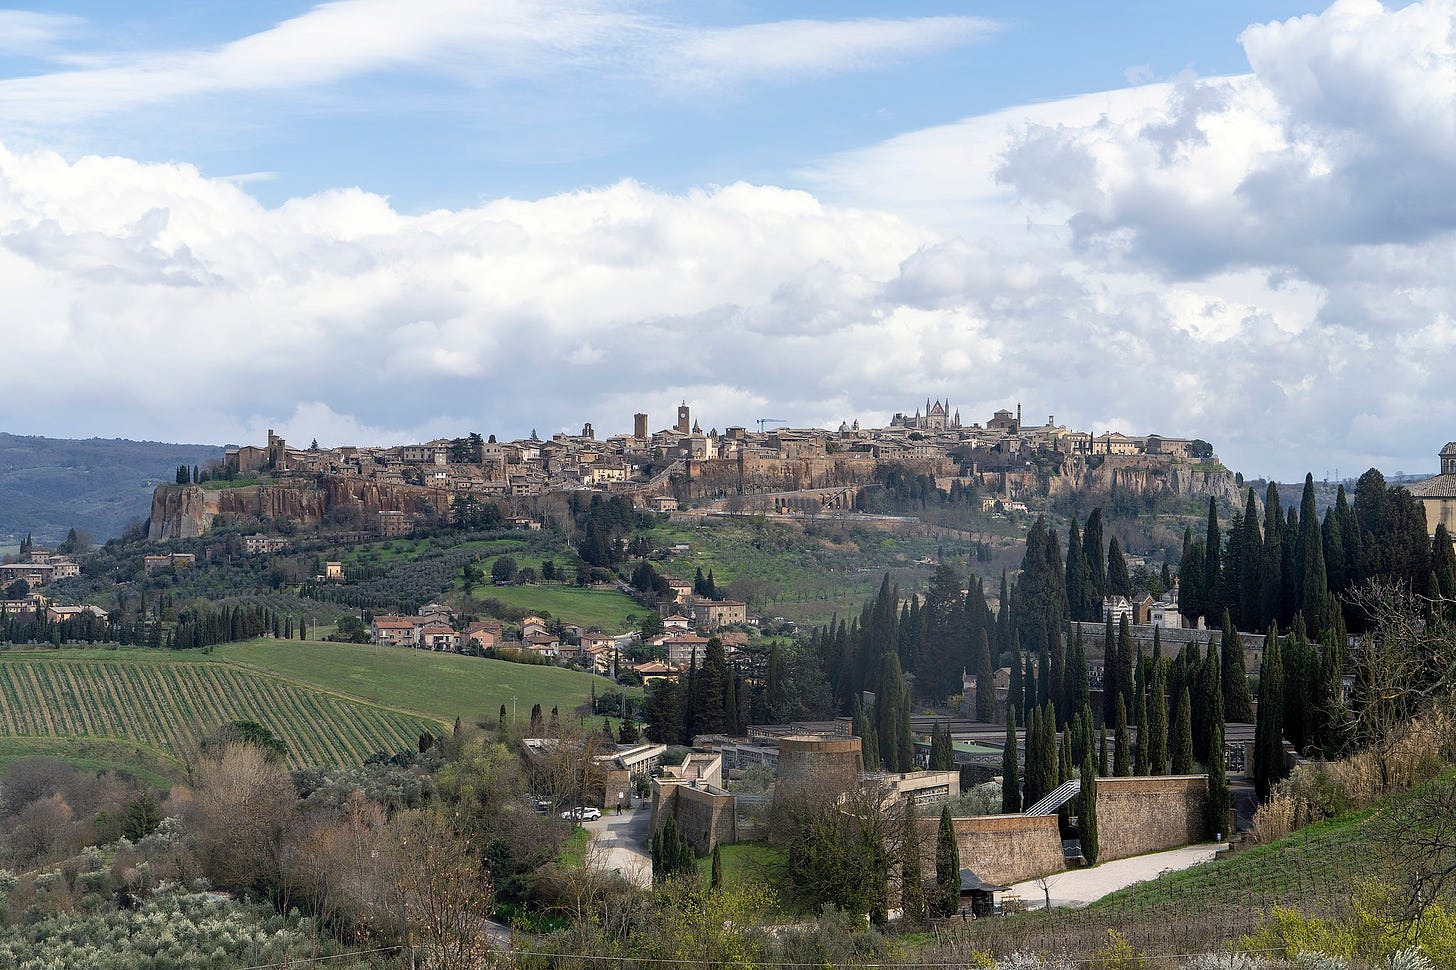 https://upload.wikimedia.org/wikipedia/commons/thumb/0/05/Panorama_di_Orvieto.jpg/2048px-Panorama_di_Orvieto.jpg